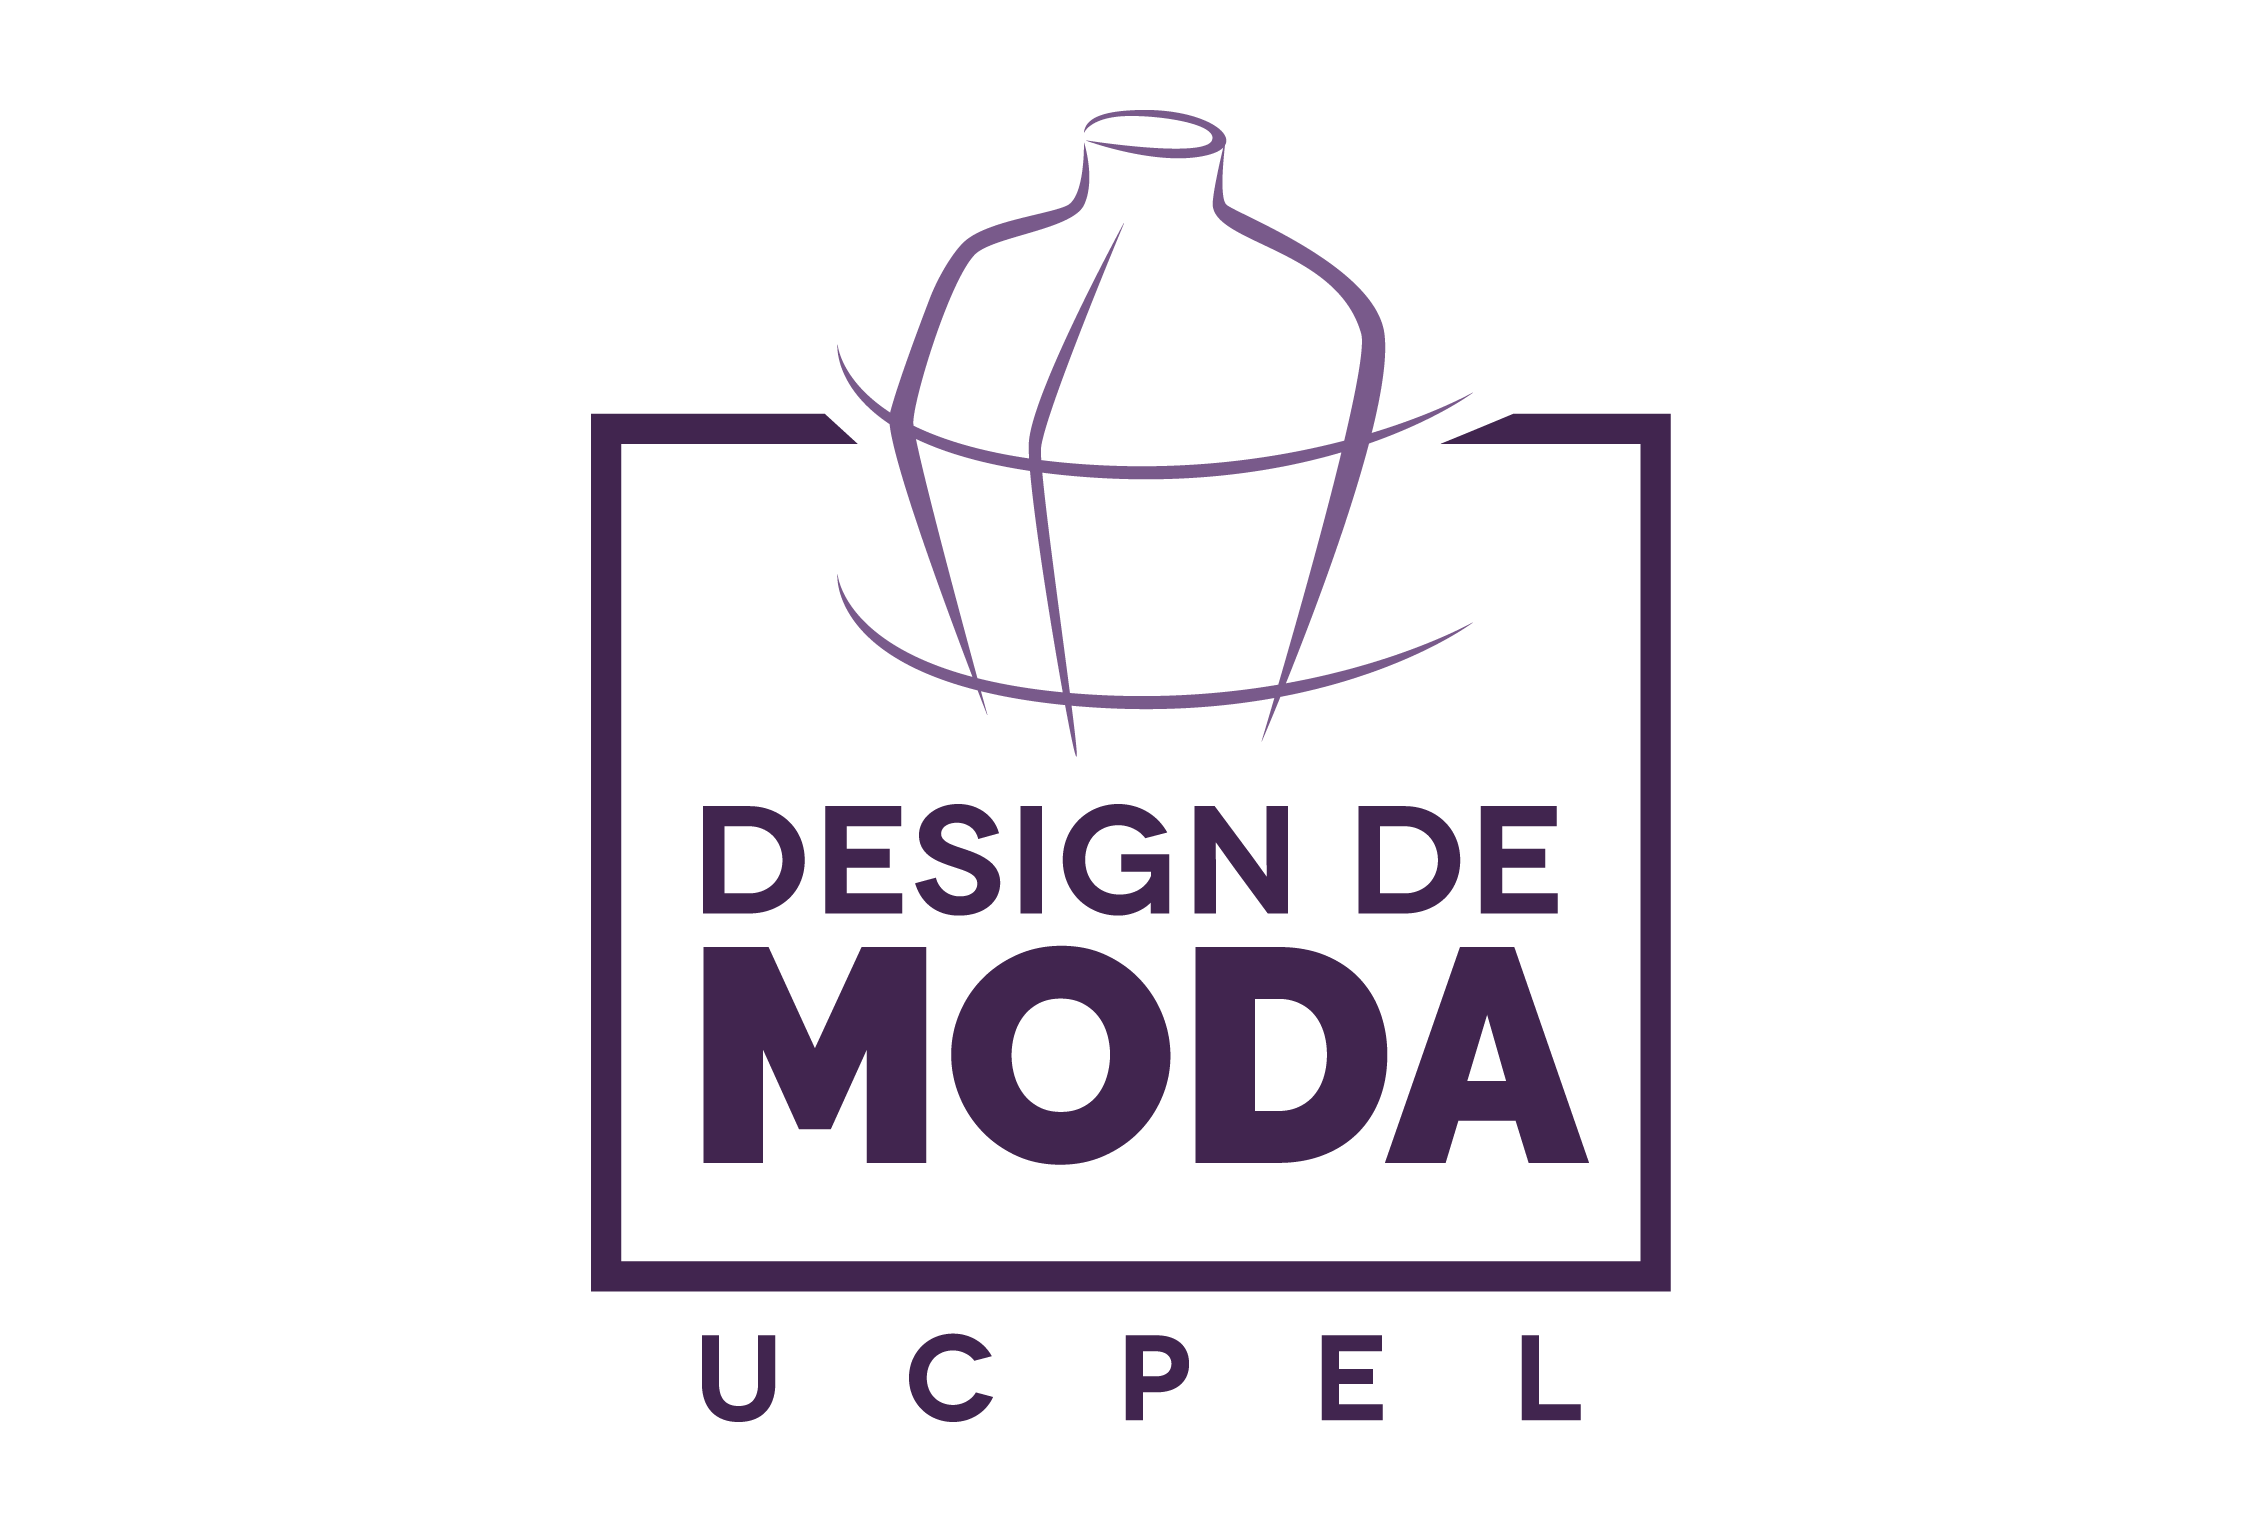 Design de Moda UCPel, 6 motivos para cursar Design de Moda na UCPel